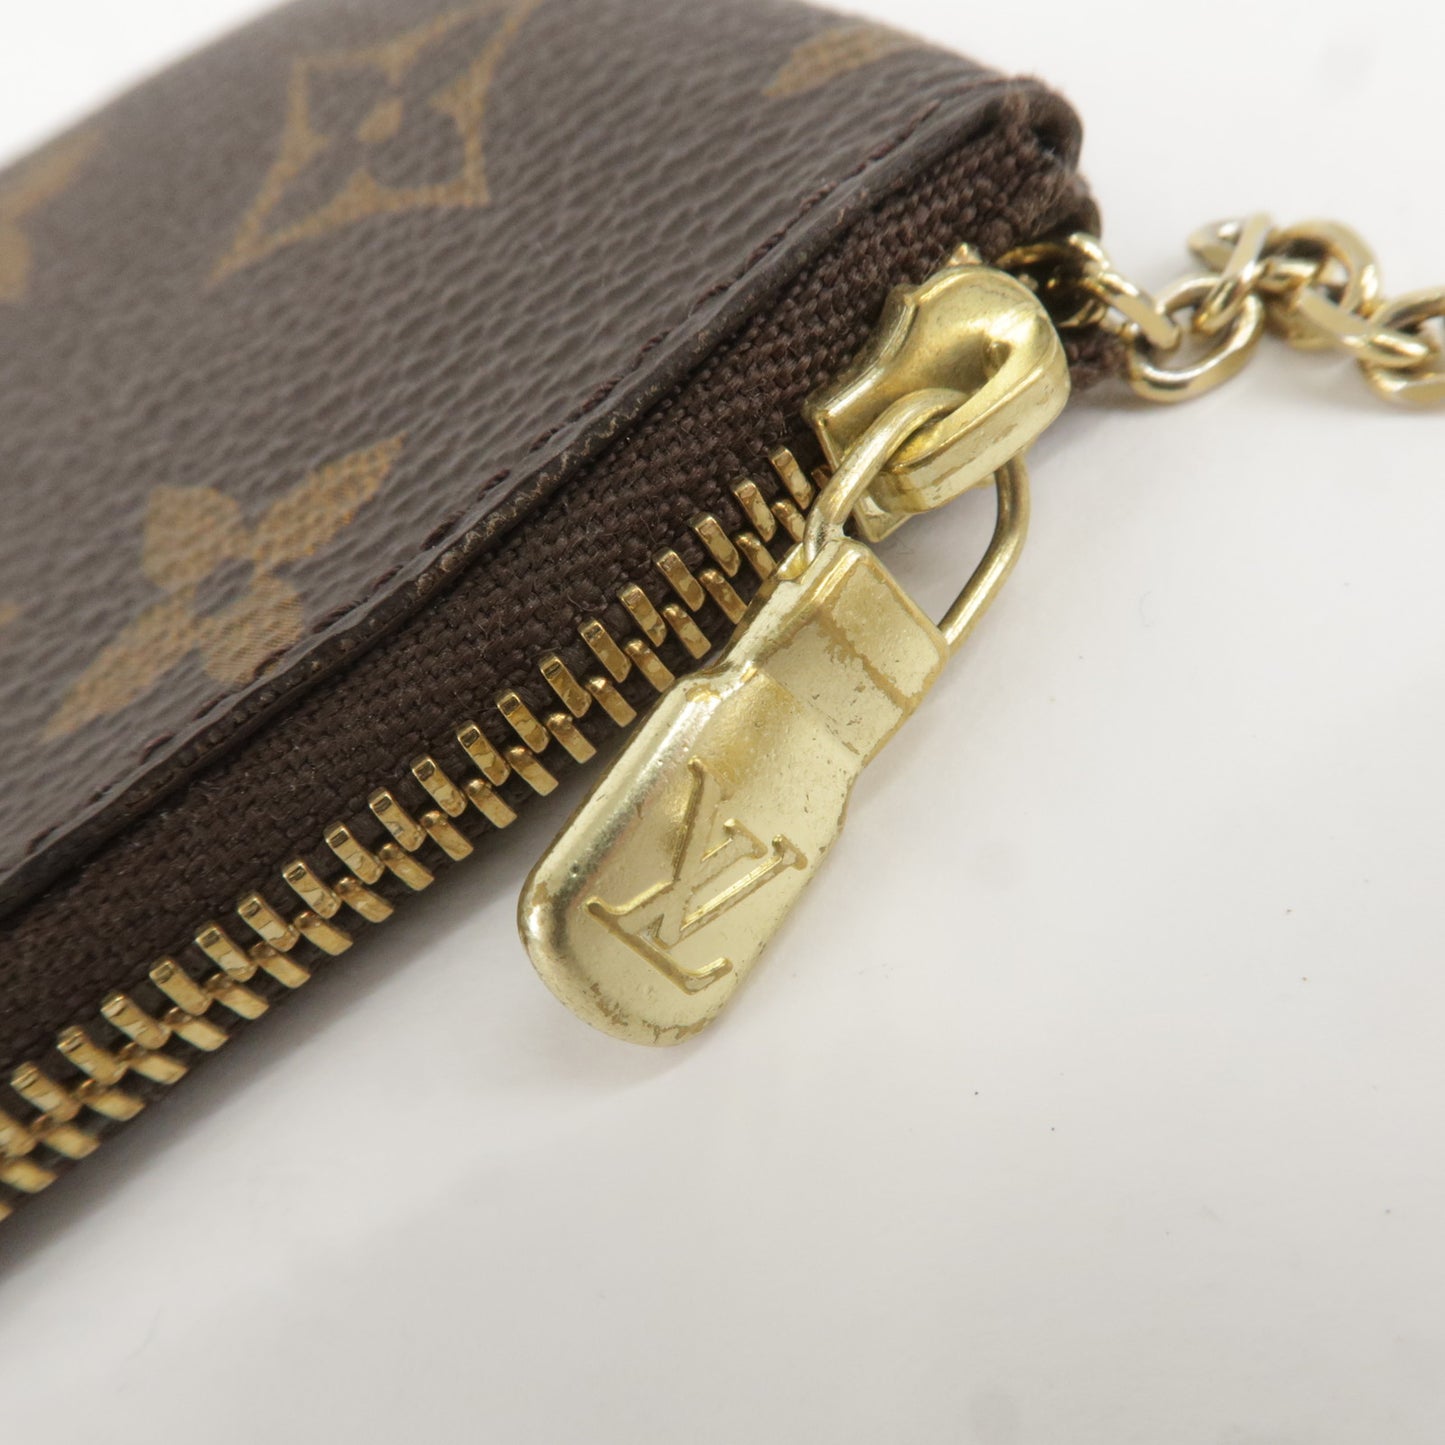 Louis Vuitton Pochette Cles Monogram Coin Case Purse Brown M62650